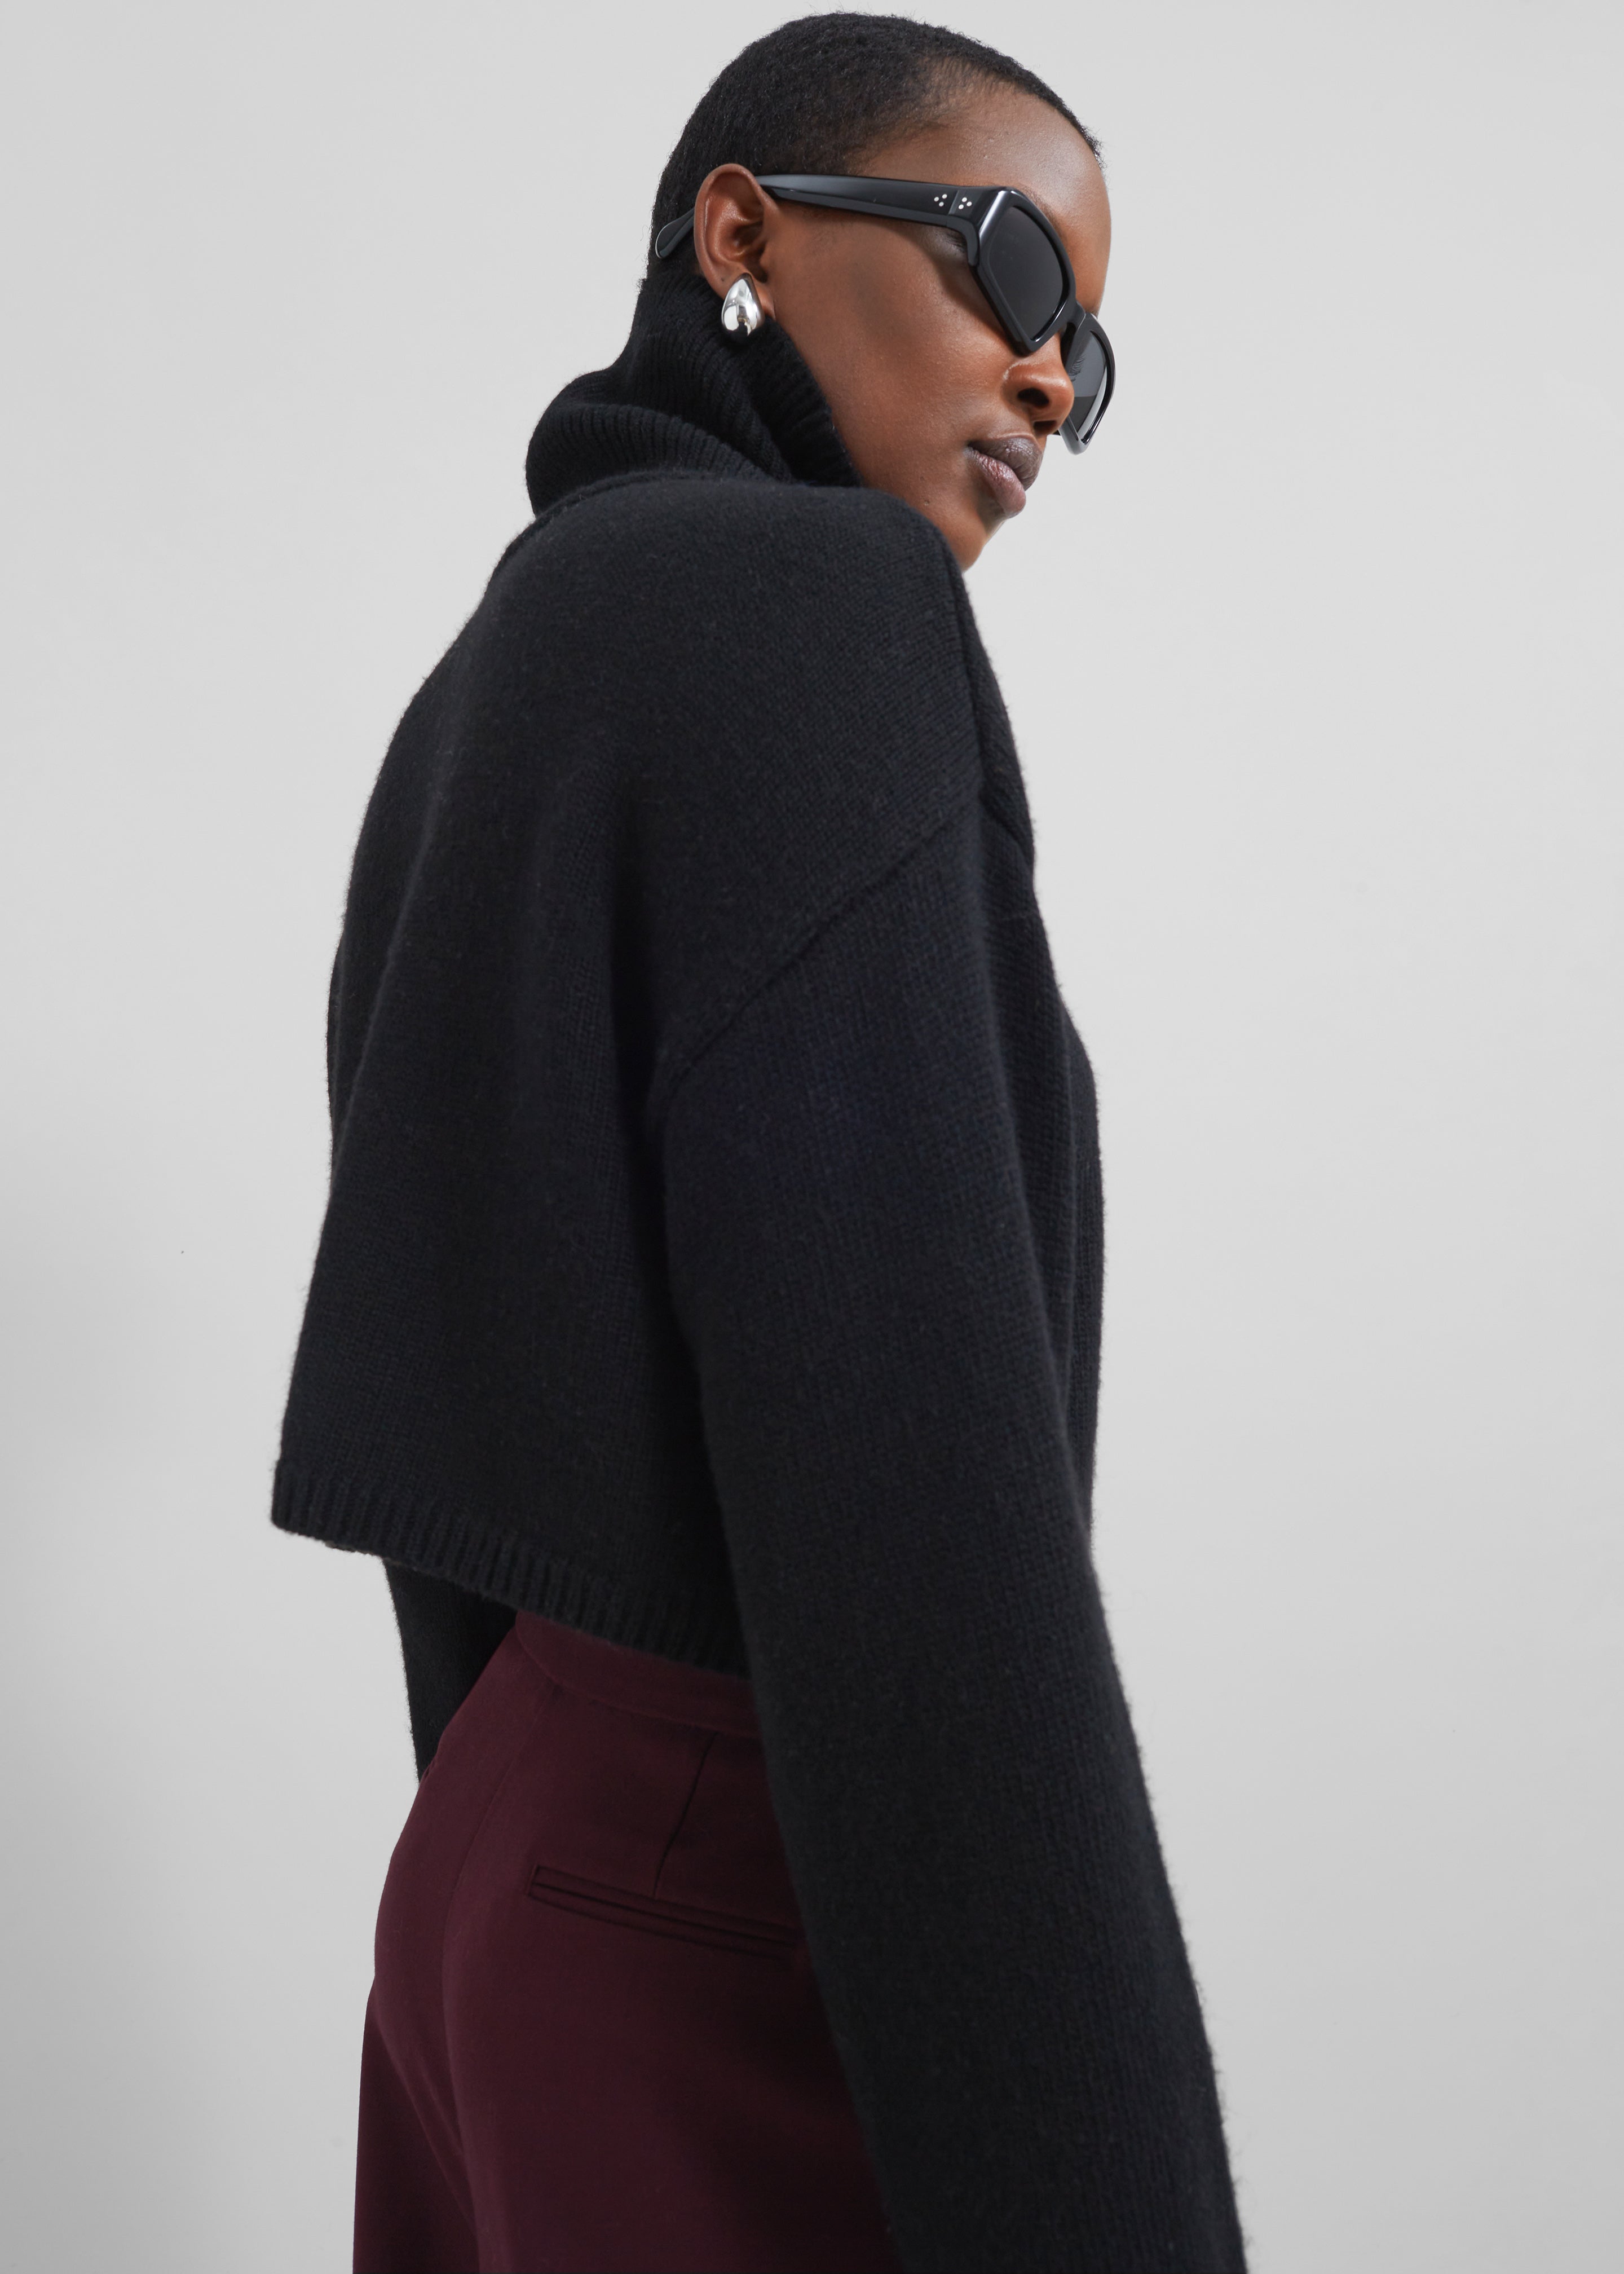 Athina Cropped Turtleneck Sweater - Black - 5